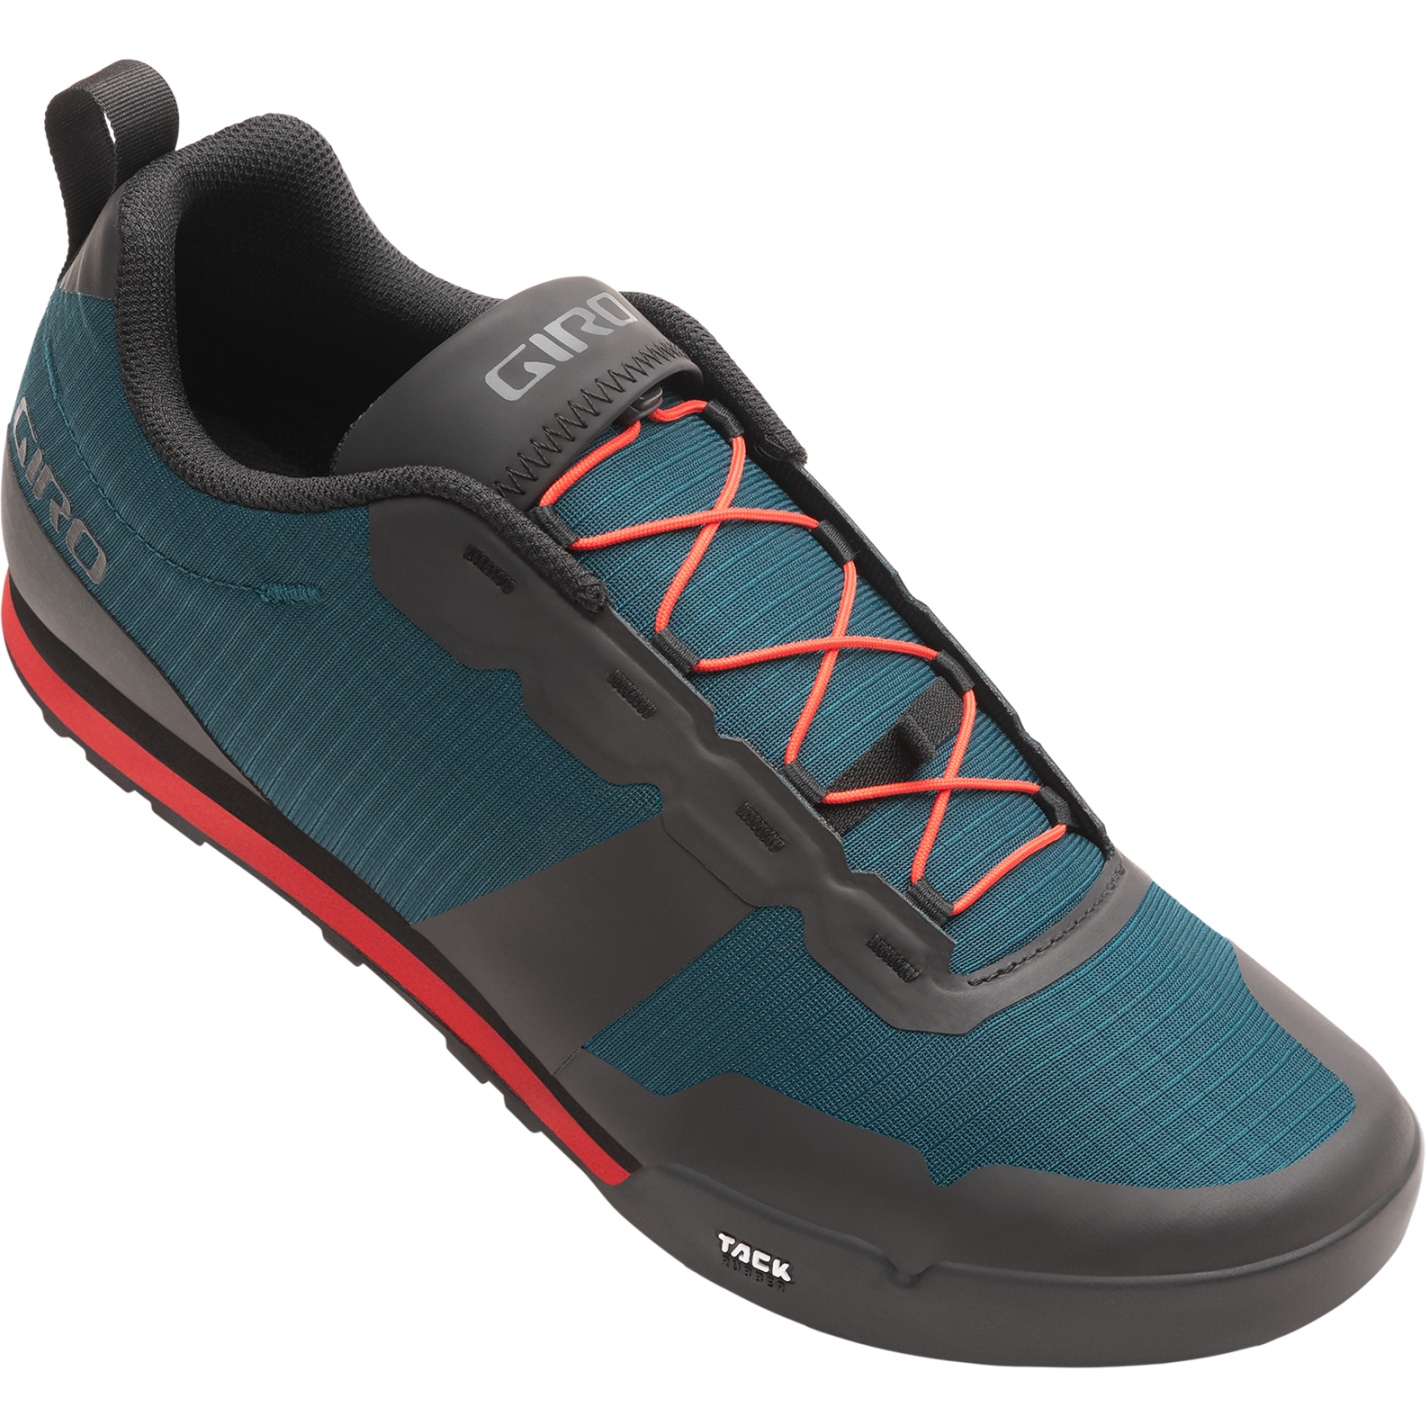 Produktbild von Giro Tracker Fastlace Flatpedal Schuhe Herren - harbor blue/bright red